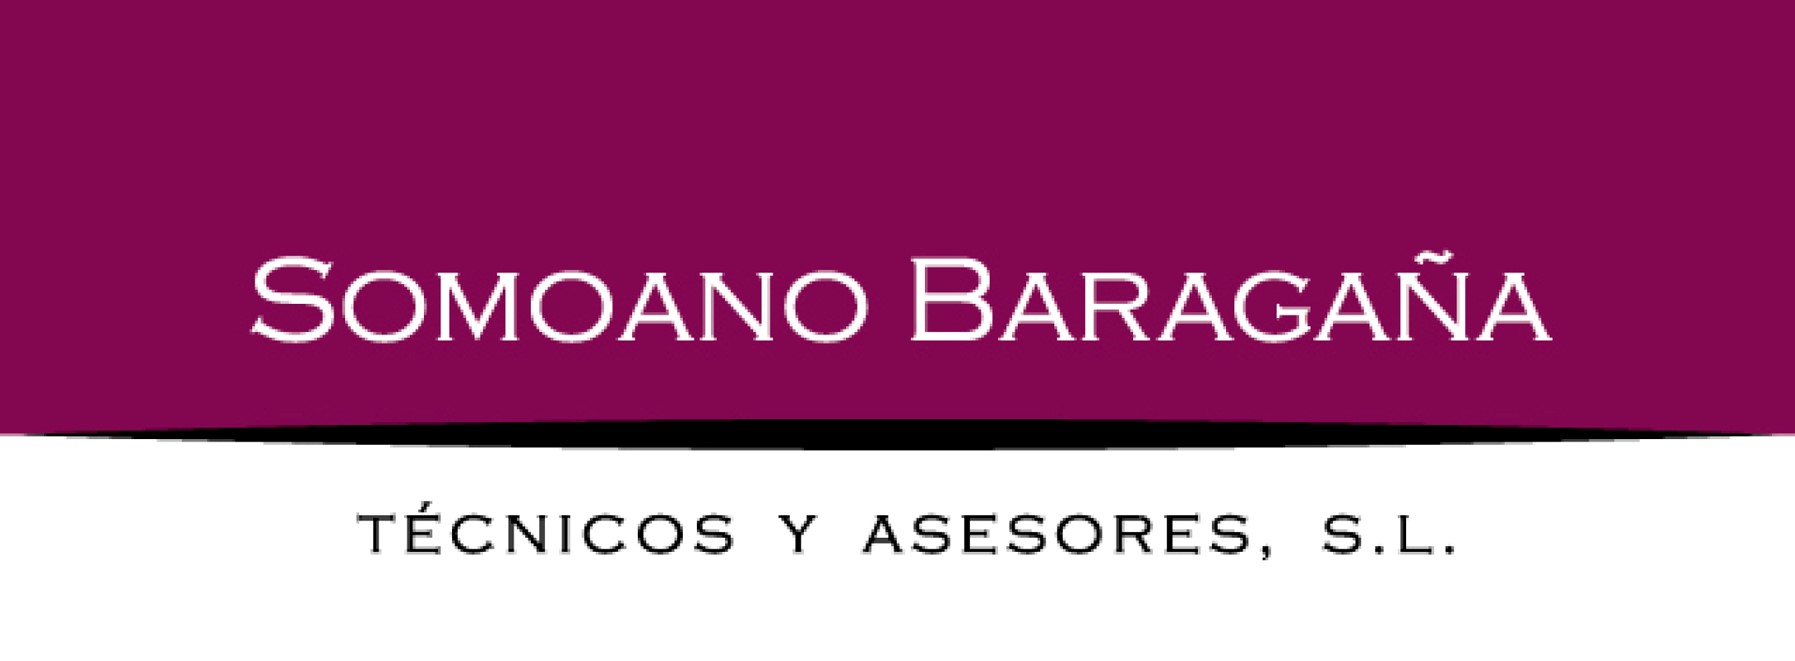 Somoano Baragaña - Agencia exclusiva de Crédito y Caución en Madrid